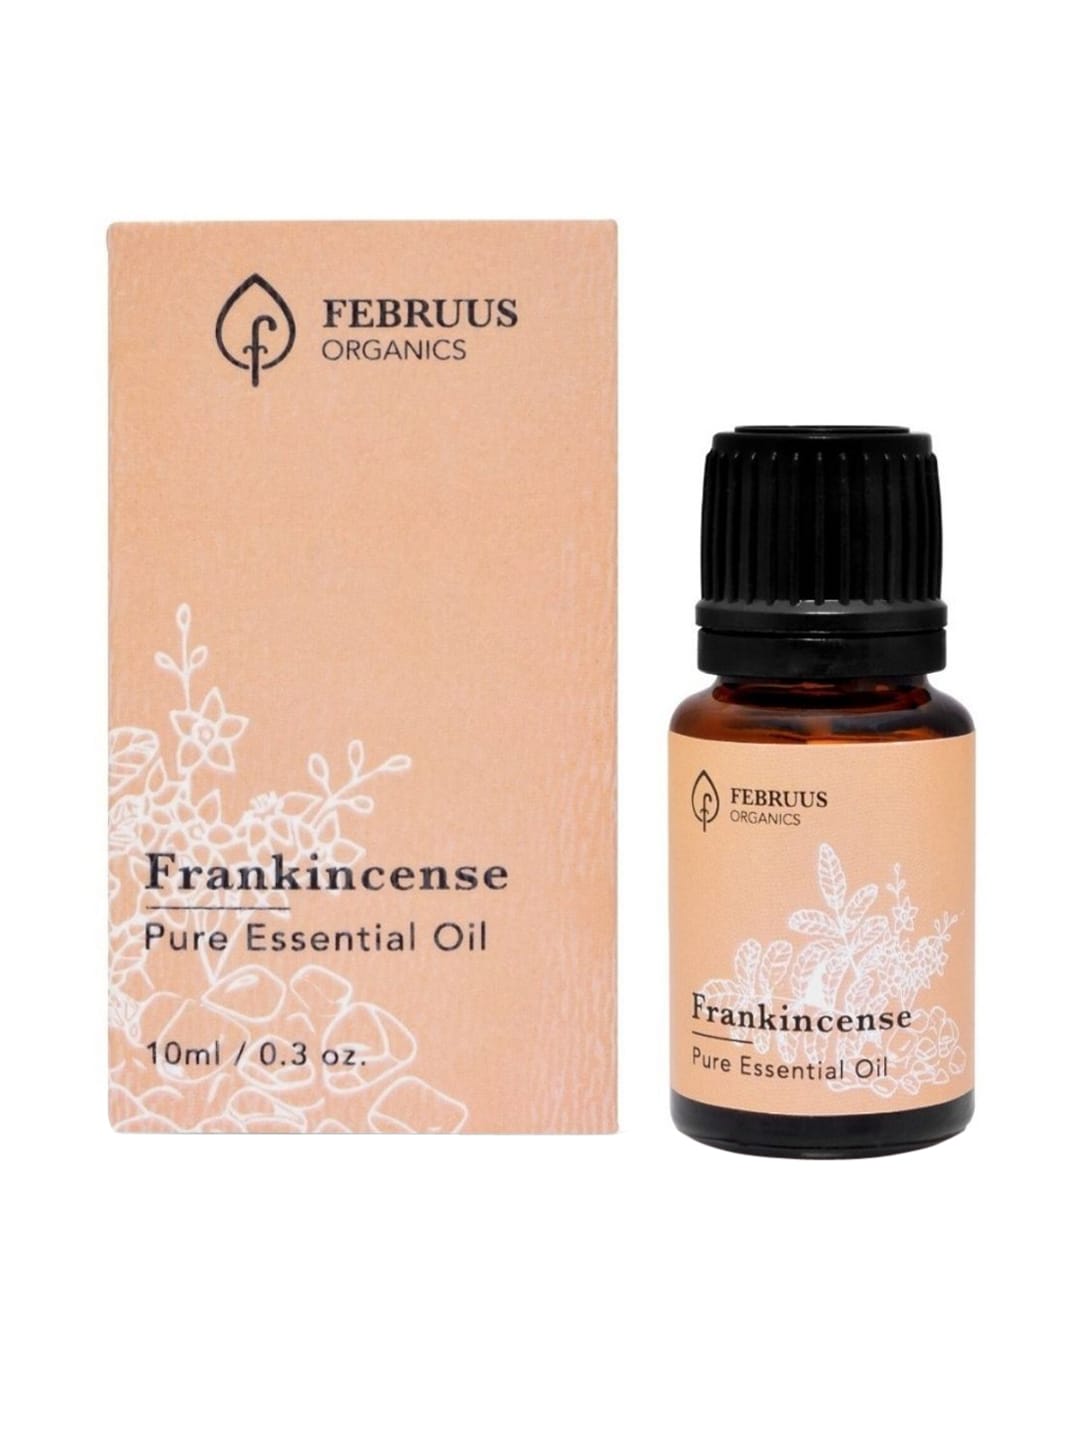 Februus Organics Frankincense Essential Oil - 10 ml Price in India